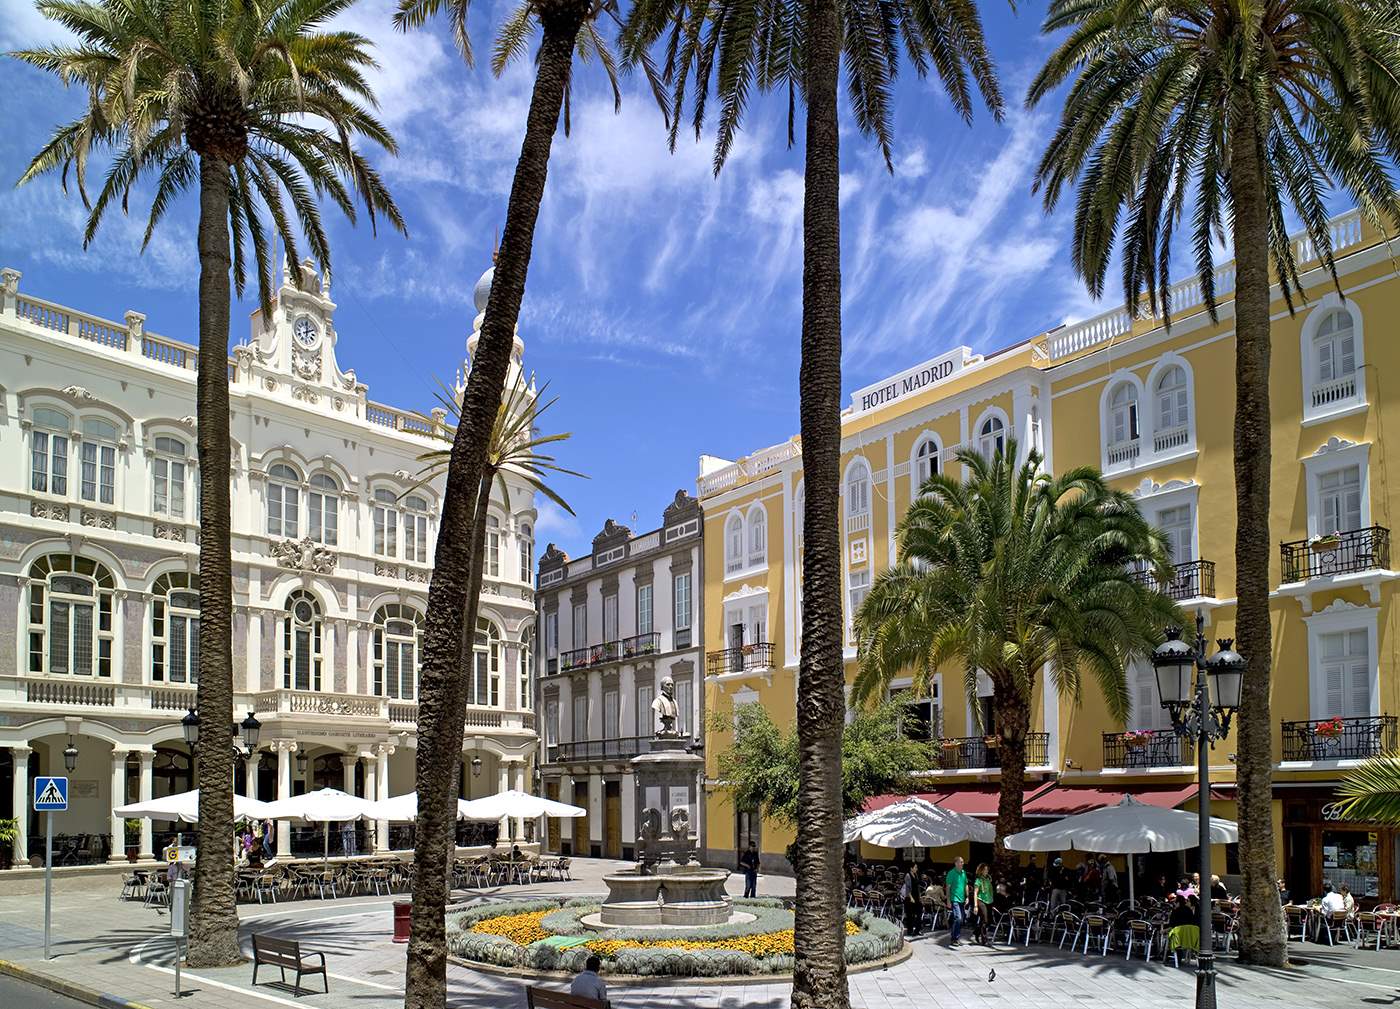 Gran Canaria: 8 días y 7 noches en Hotel 3* con Desayuno, Media Pensión o Todo Incluido. ¡Vuelo desde Granada!